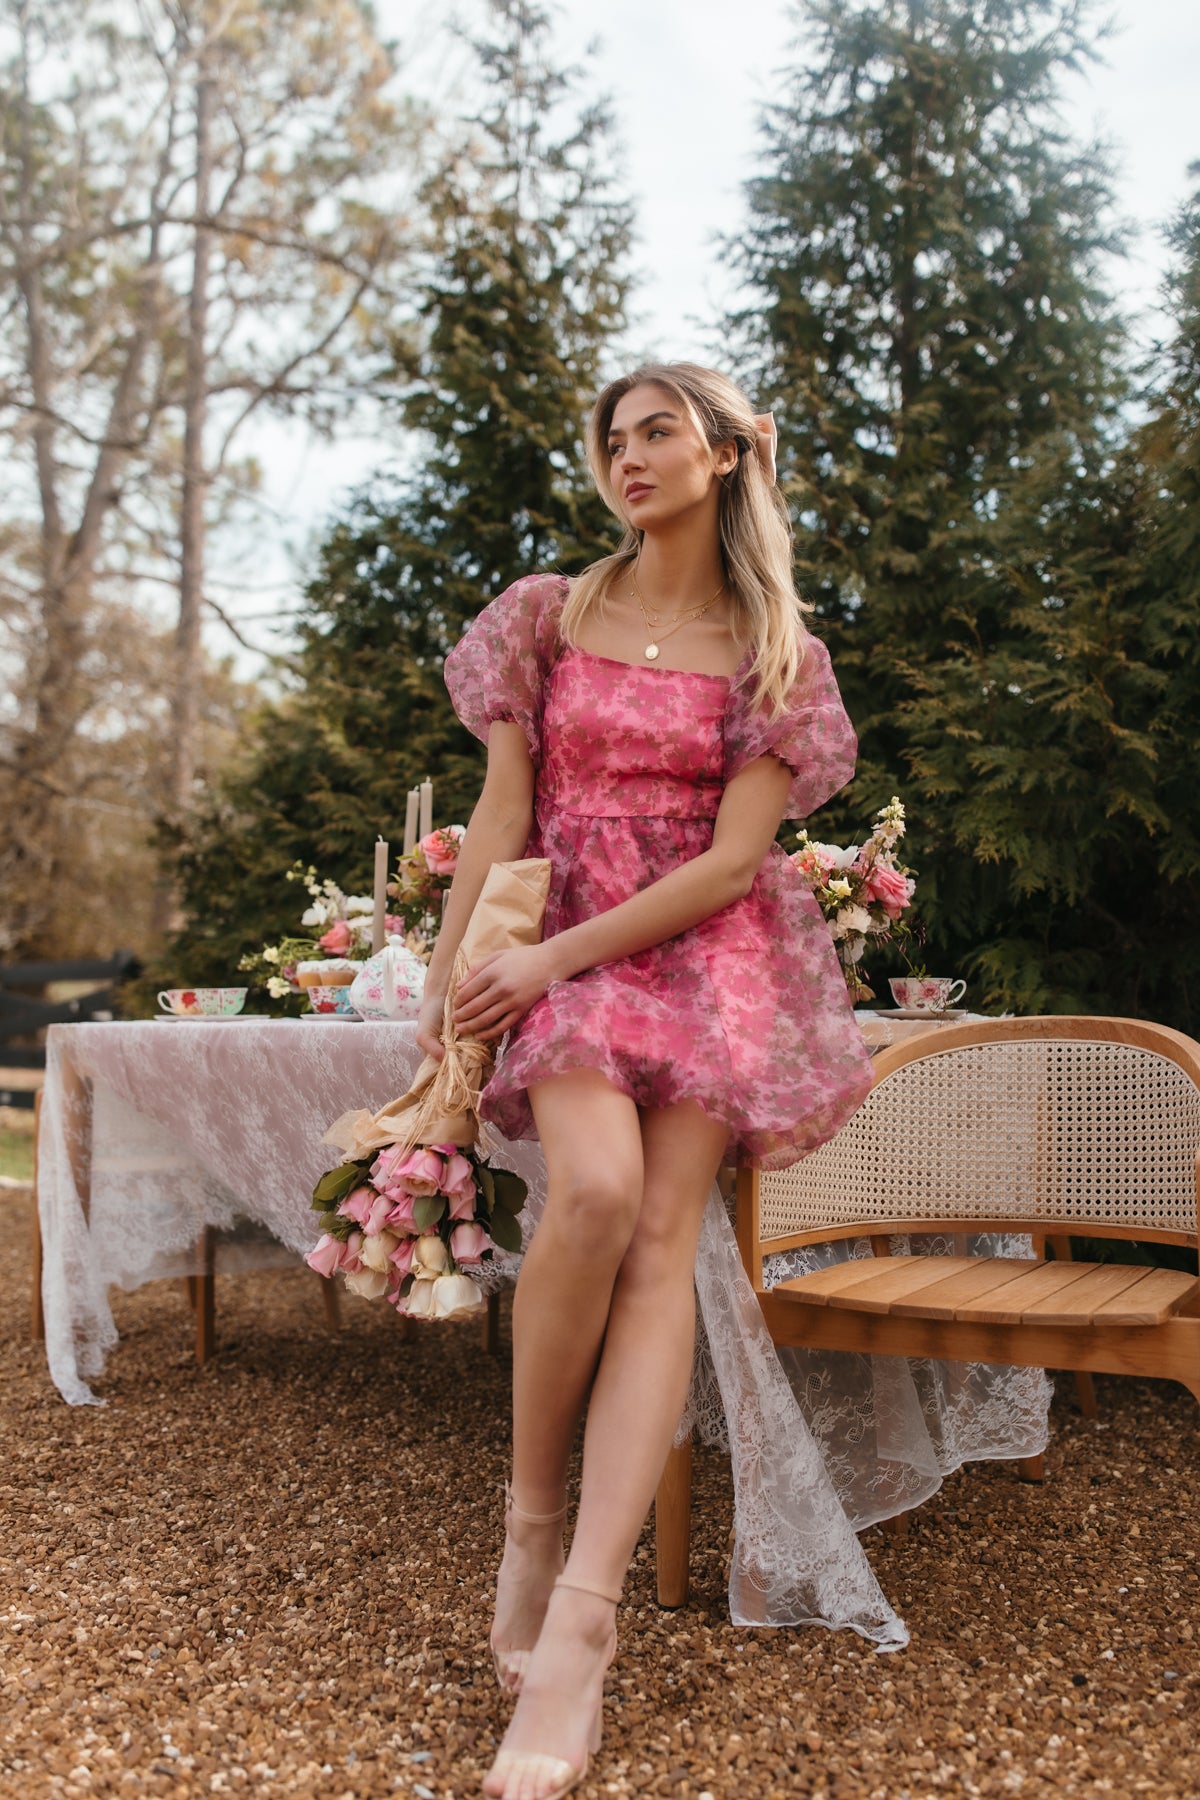 Gigi Babydoll Dress, alternate, color, Floral